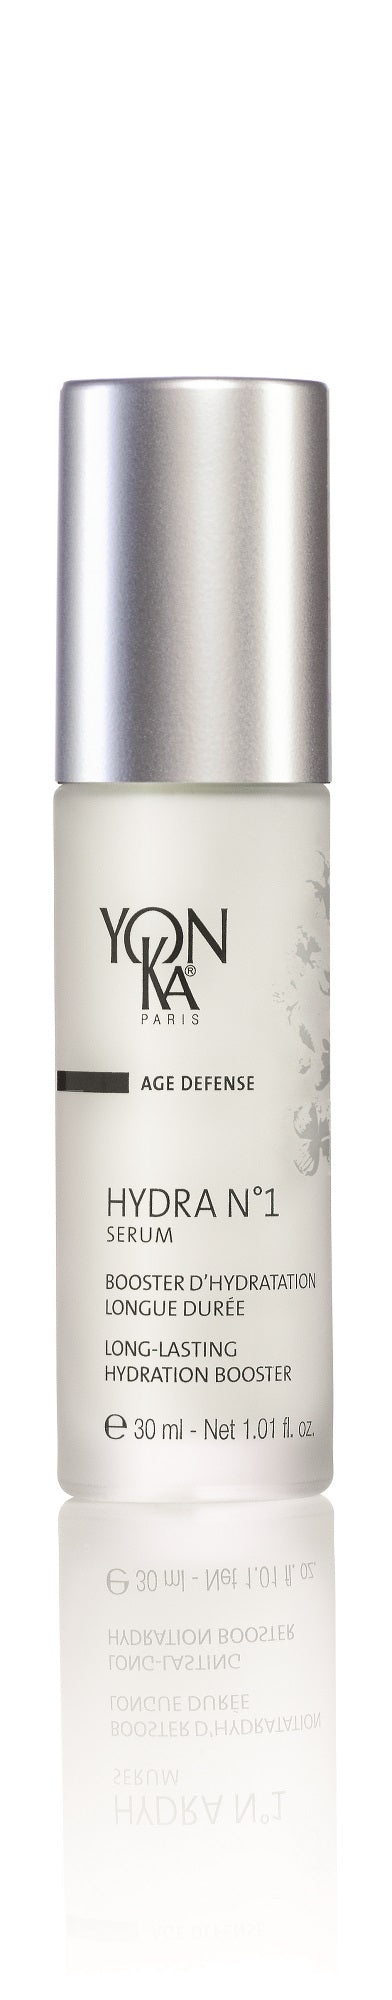 Yonka Hydra No1 Serum -1 oz